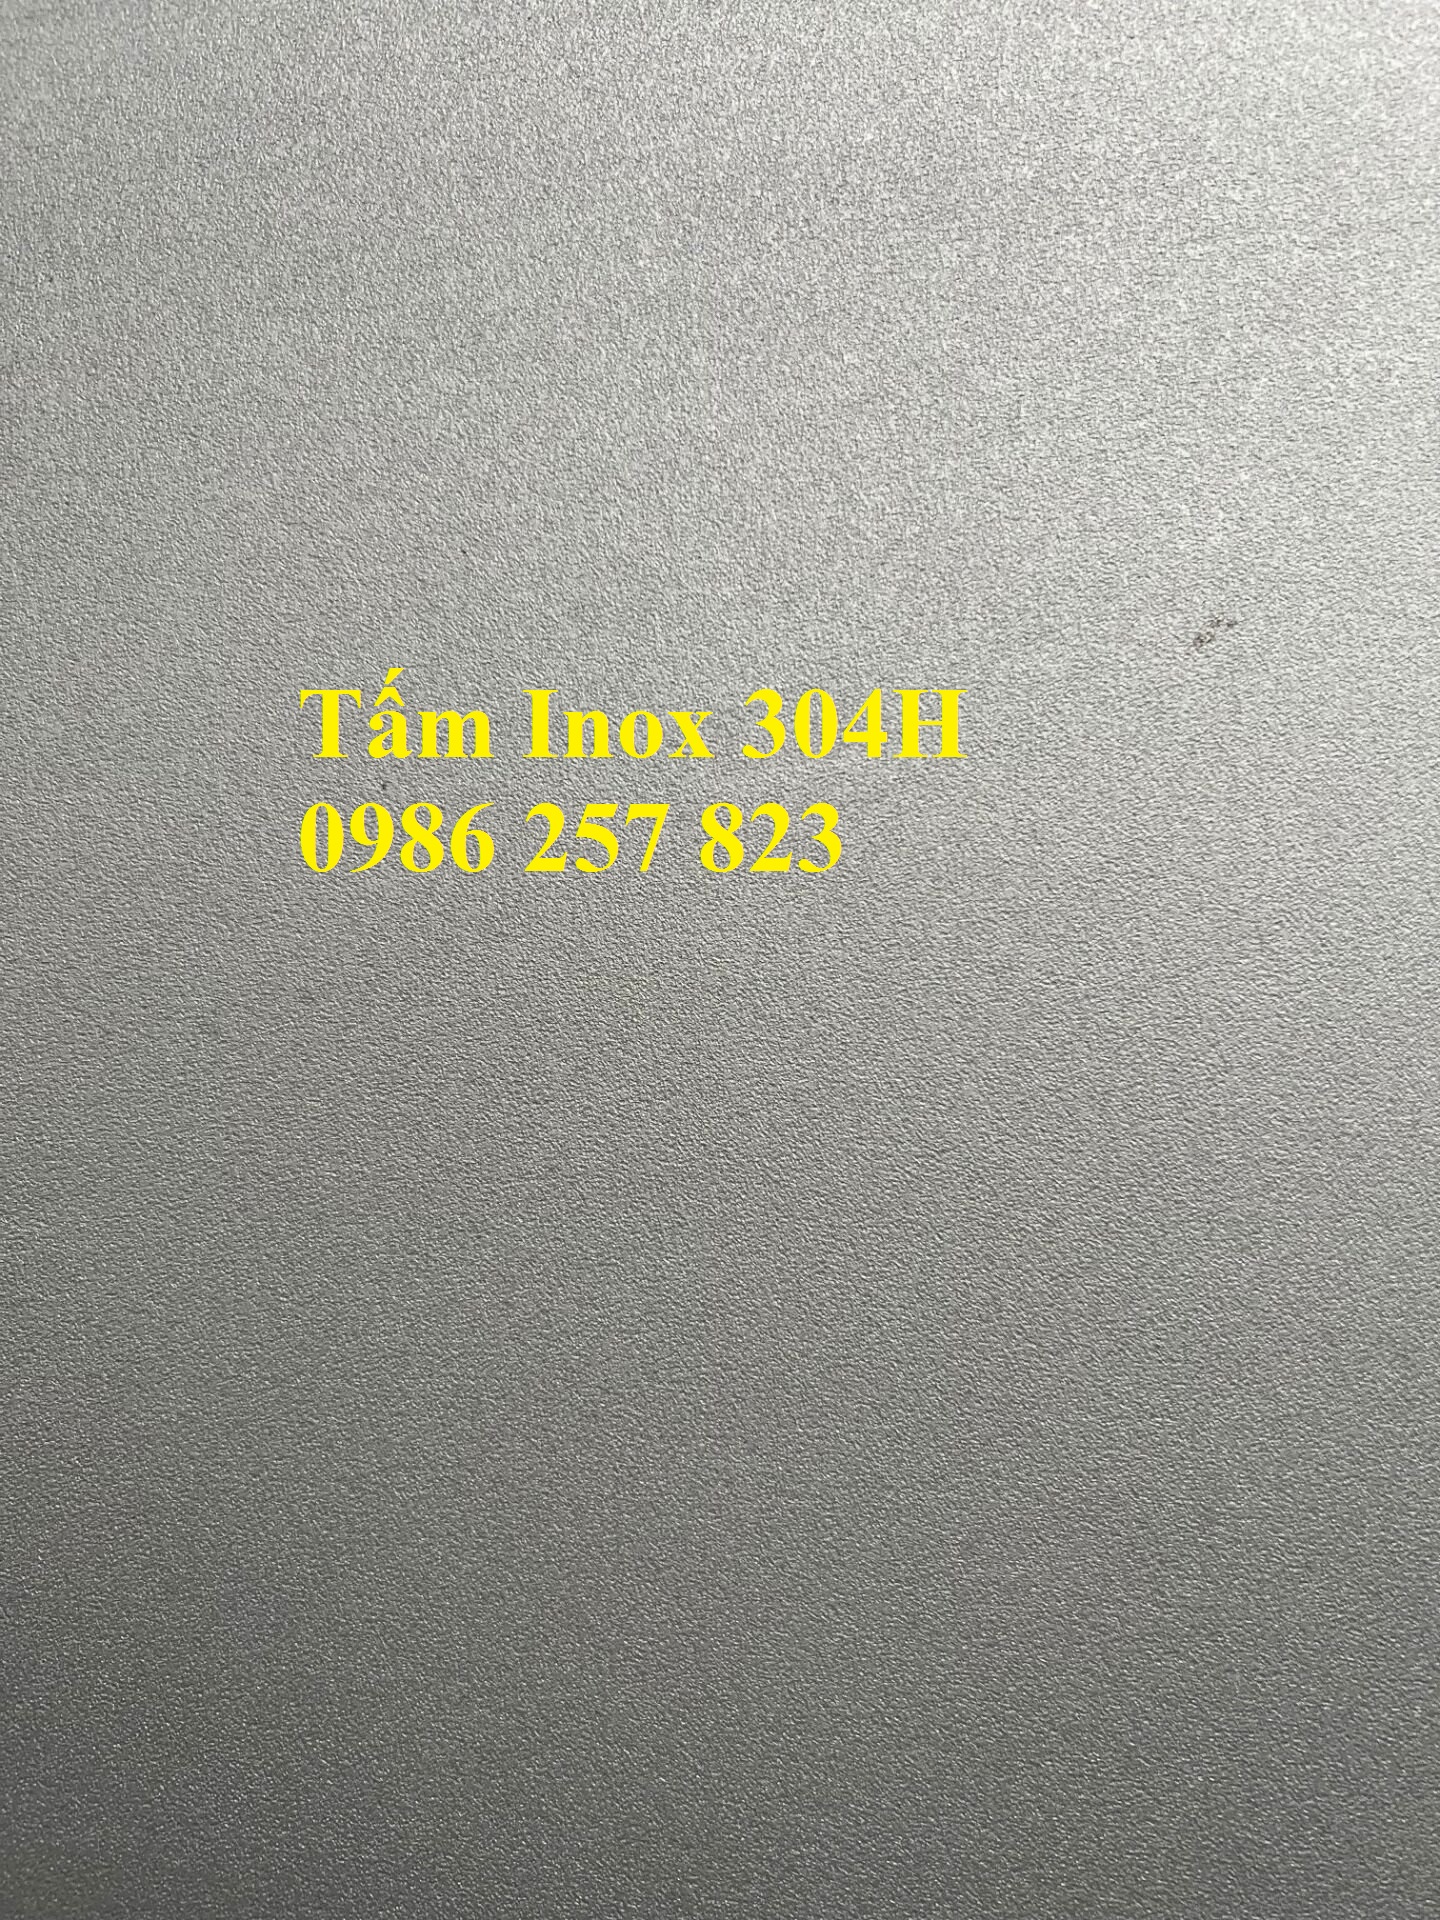 Sản xuất thép tấm Inox 420J1, 420J2 giá tốt, số lượng lớn